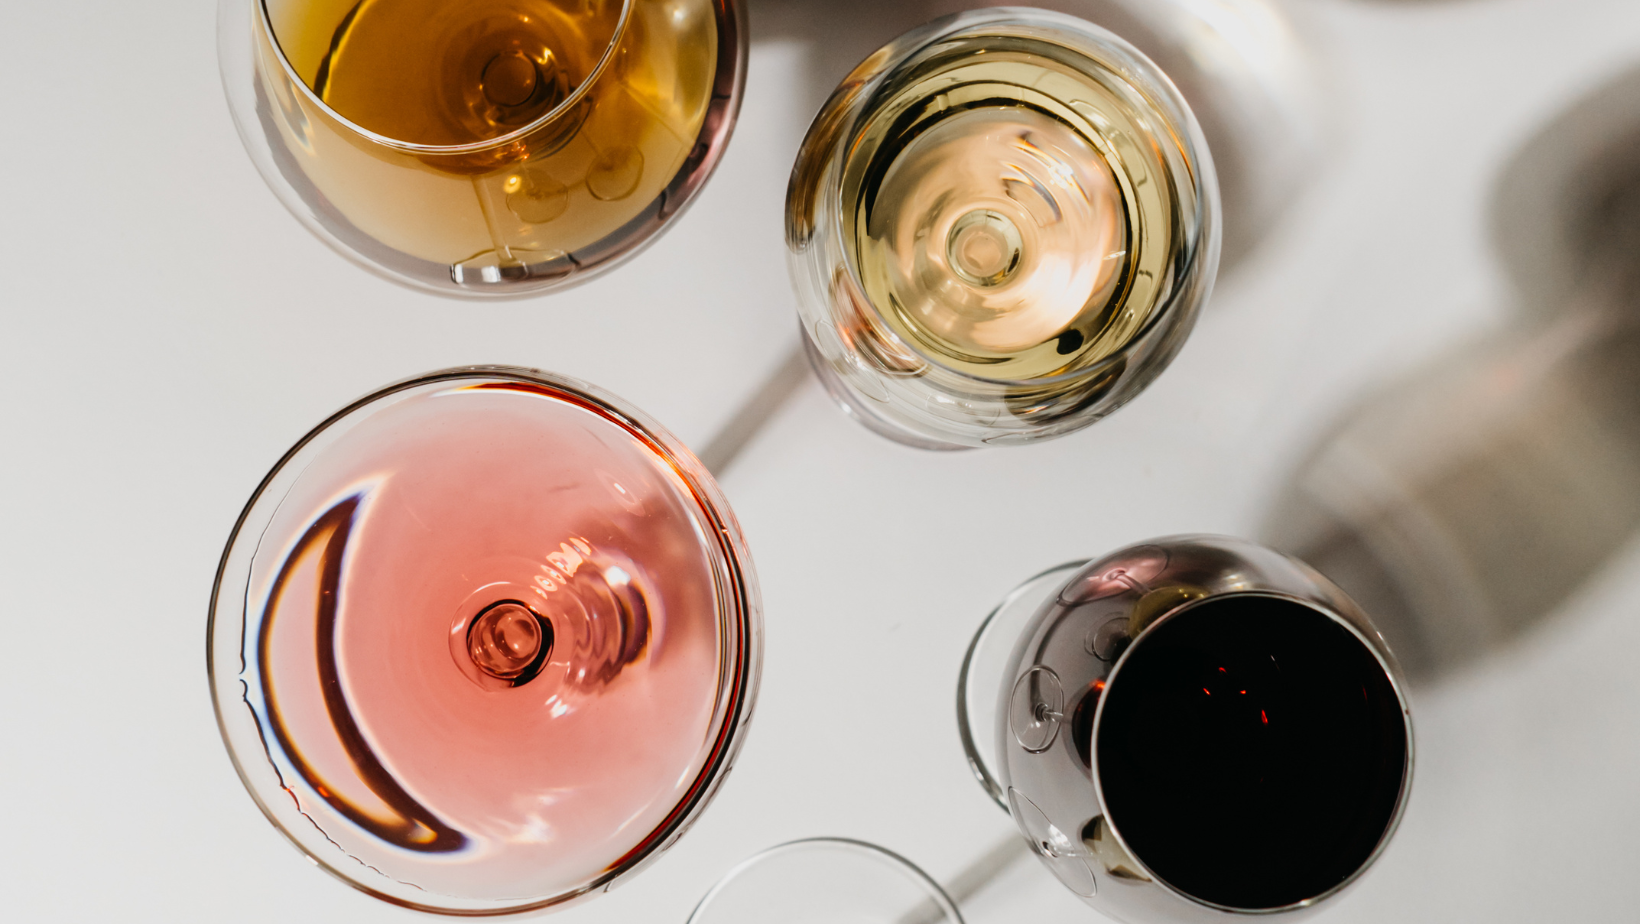 Notizie sul vino: dal fondo anti-peronospora ai migliori Sauvignon al mondo, passando dal primo vino dolce subacqueo